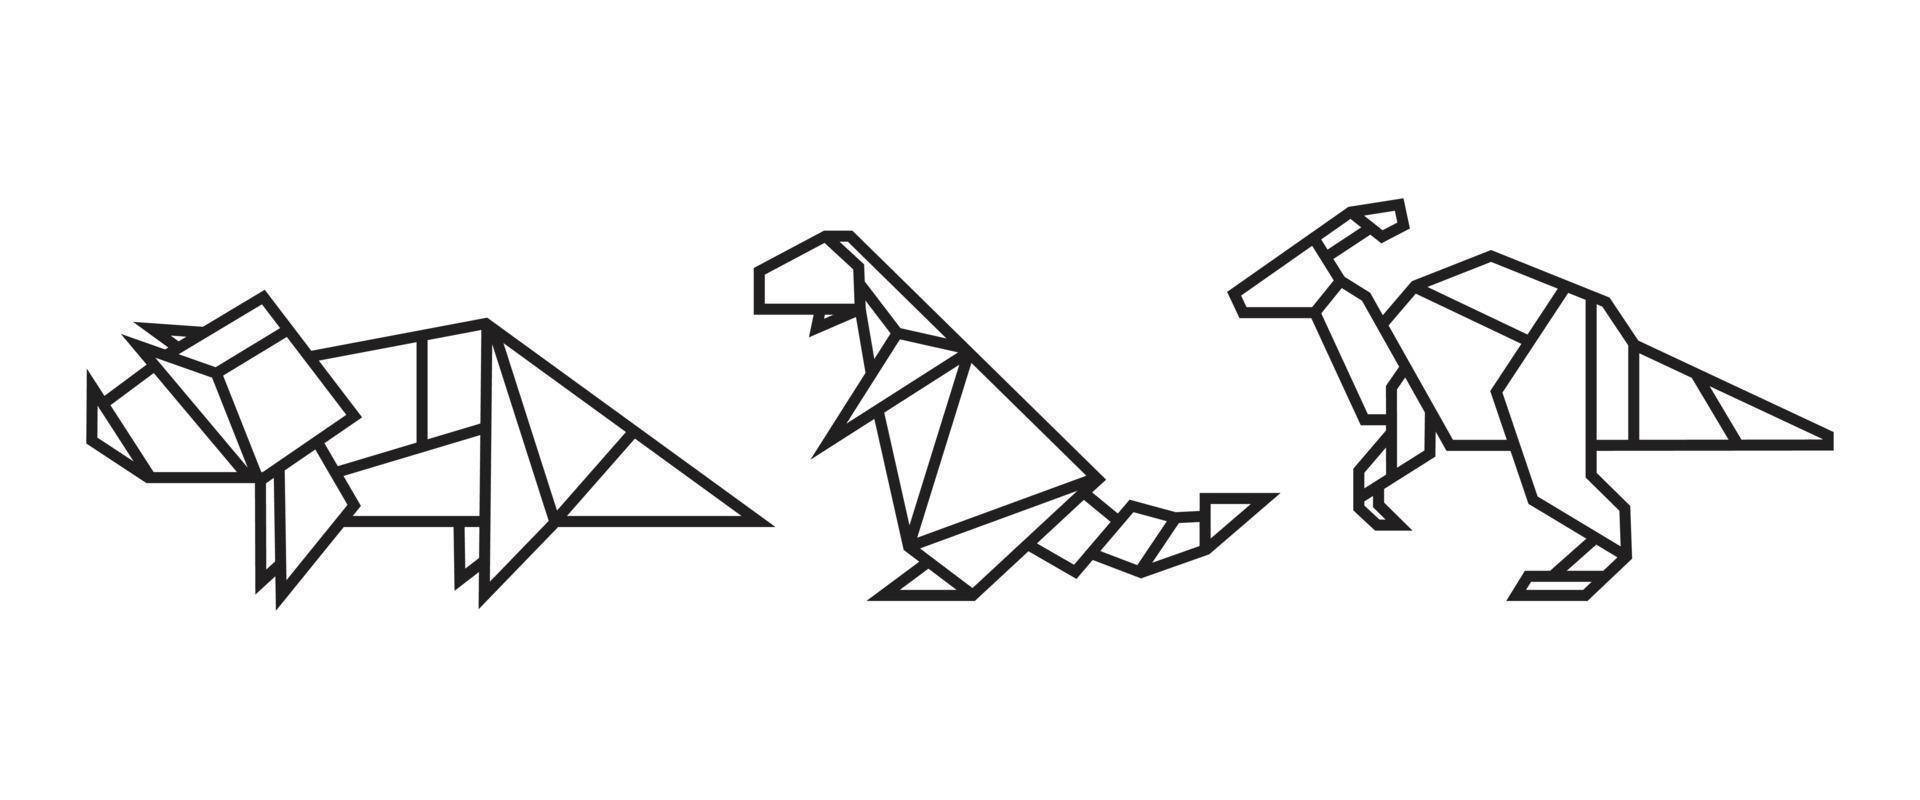 ilustrações de dinossauros em estilo origami vetor